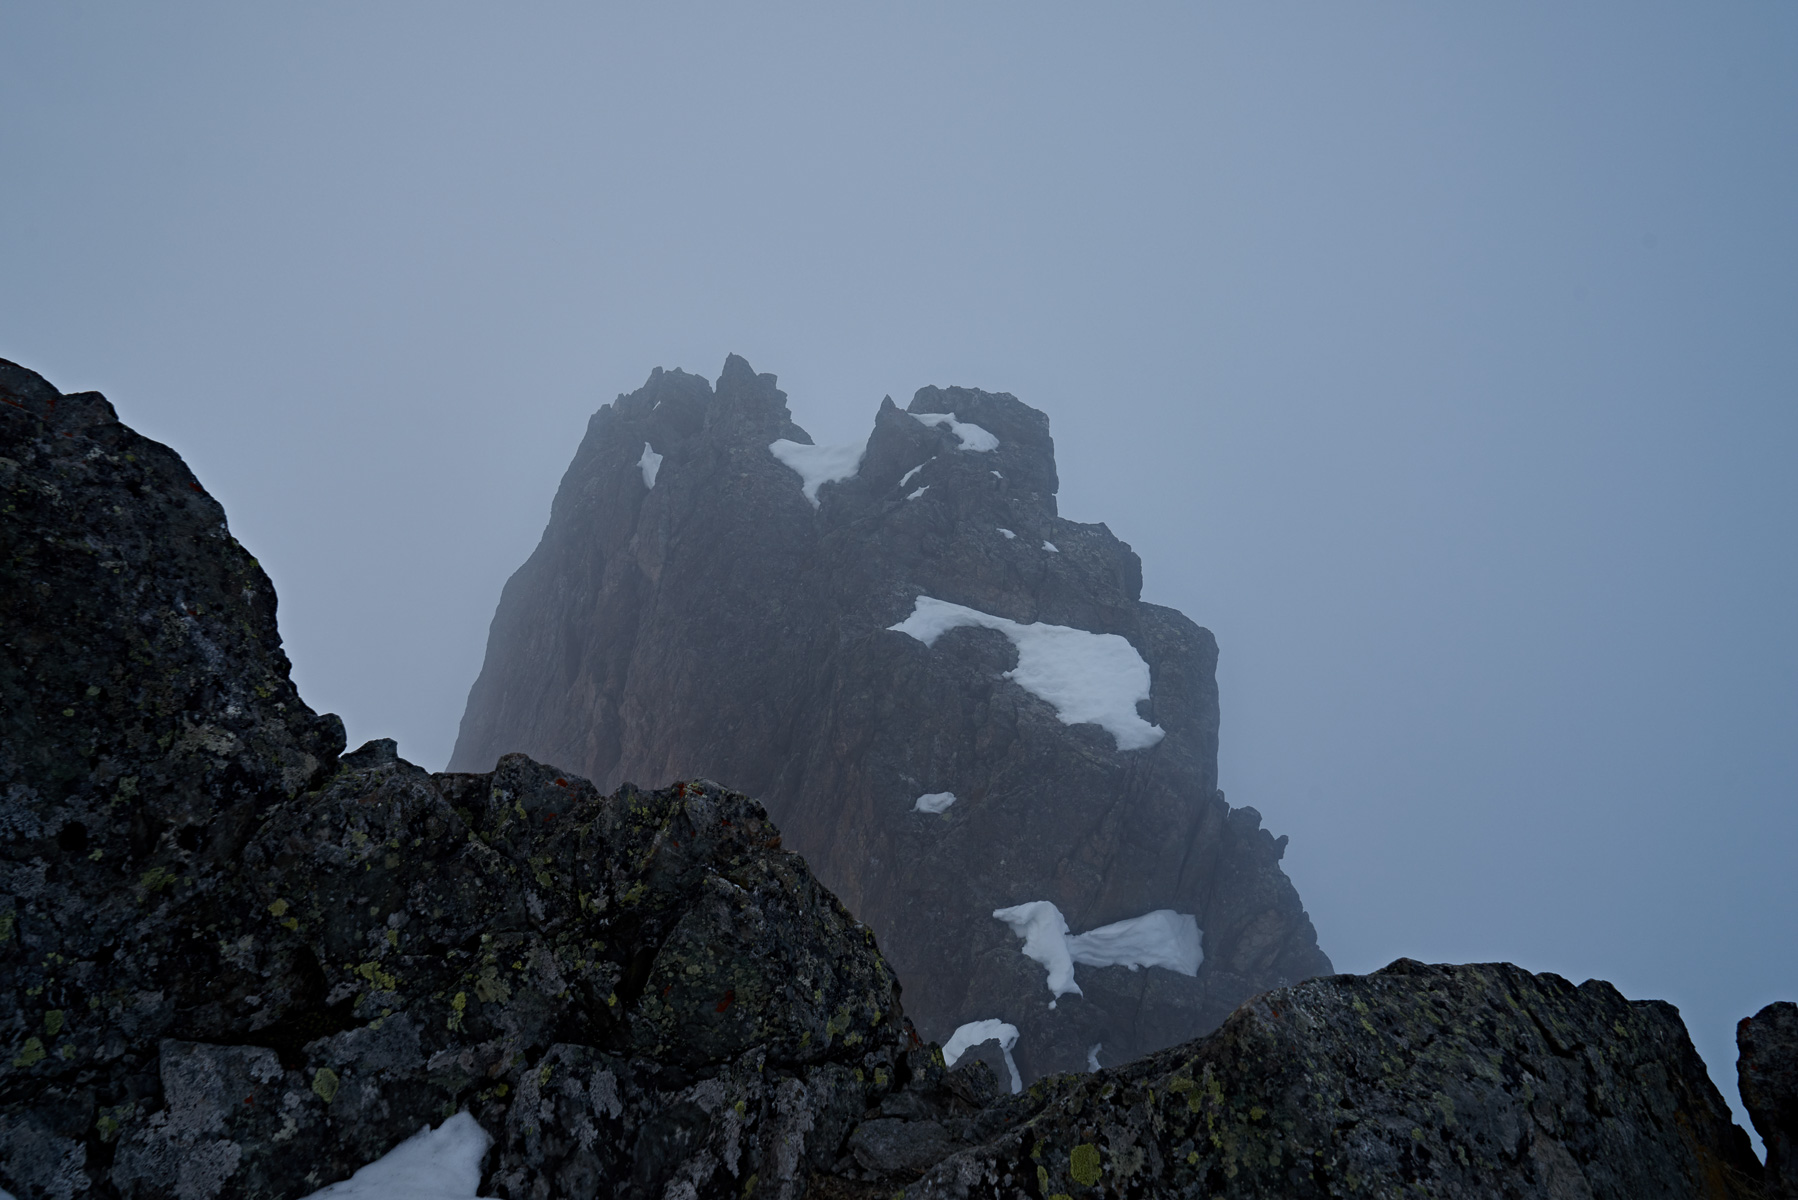 Am Gipfel gab es leider nur noch Wolken und Nebel.